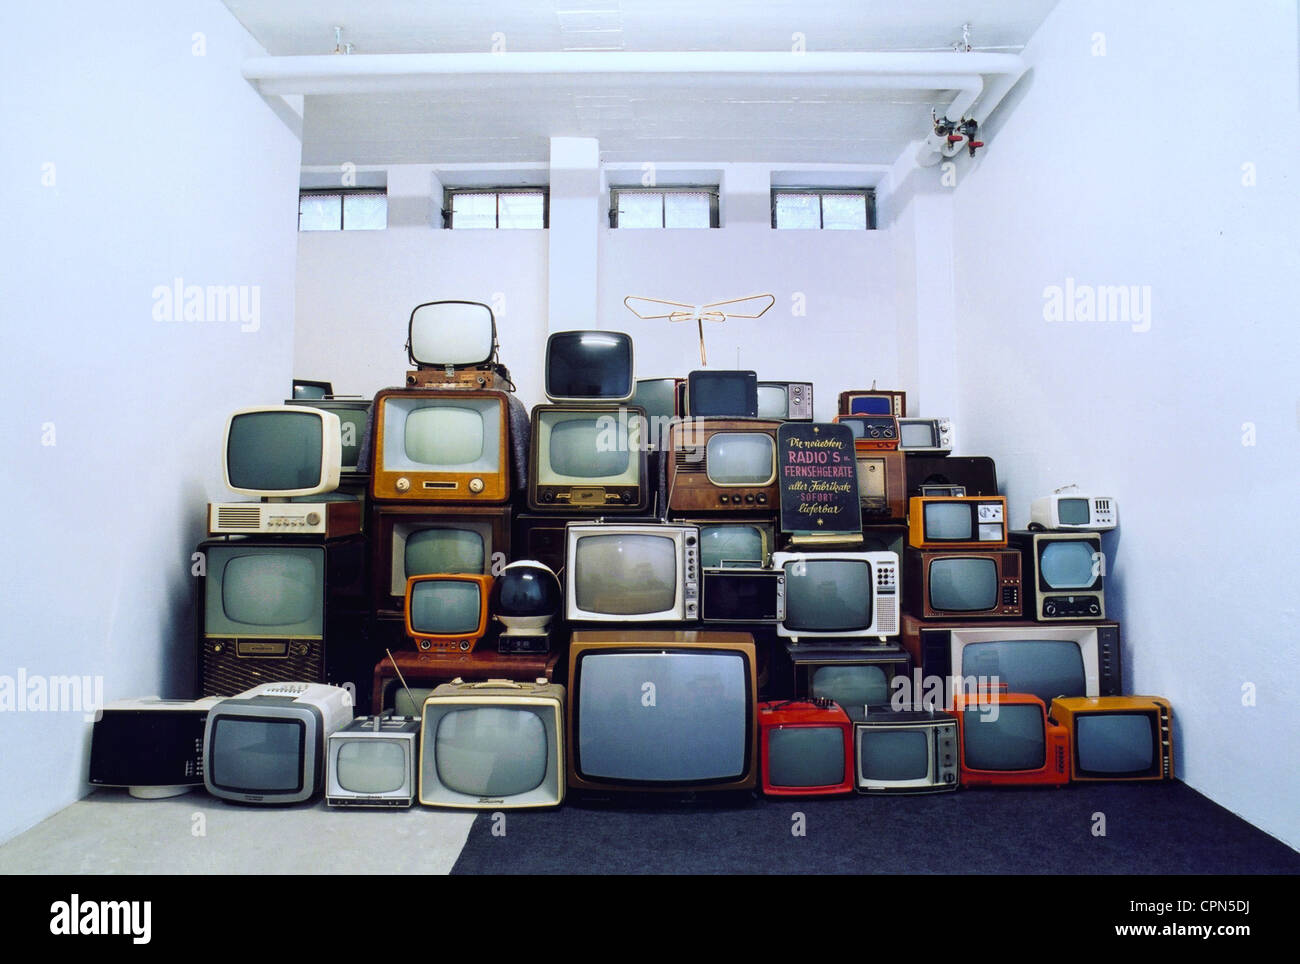 Broadcast, televisione, collezione di vecchi televisori del 50s, 60s e 70s, il transistore TV imposta dal Giappone, Monaco di Baviera, Germania Foto Stock